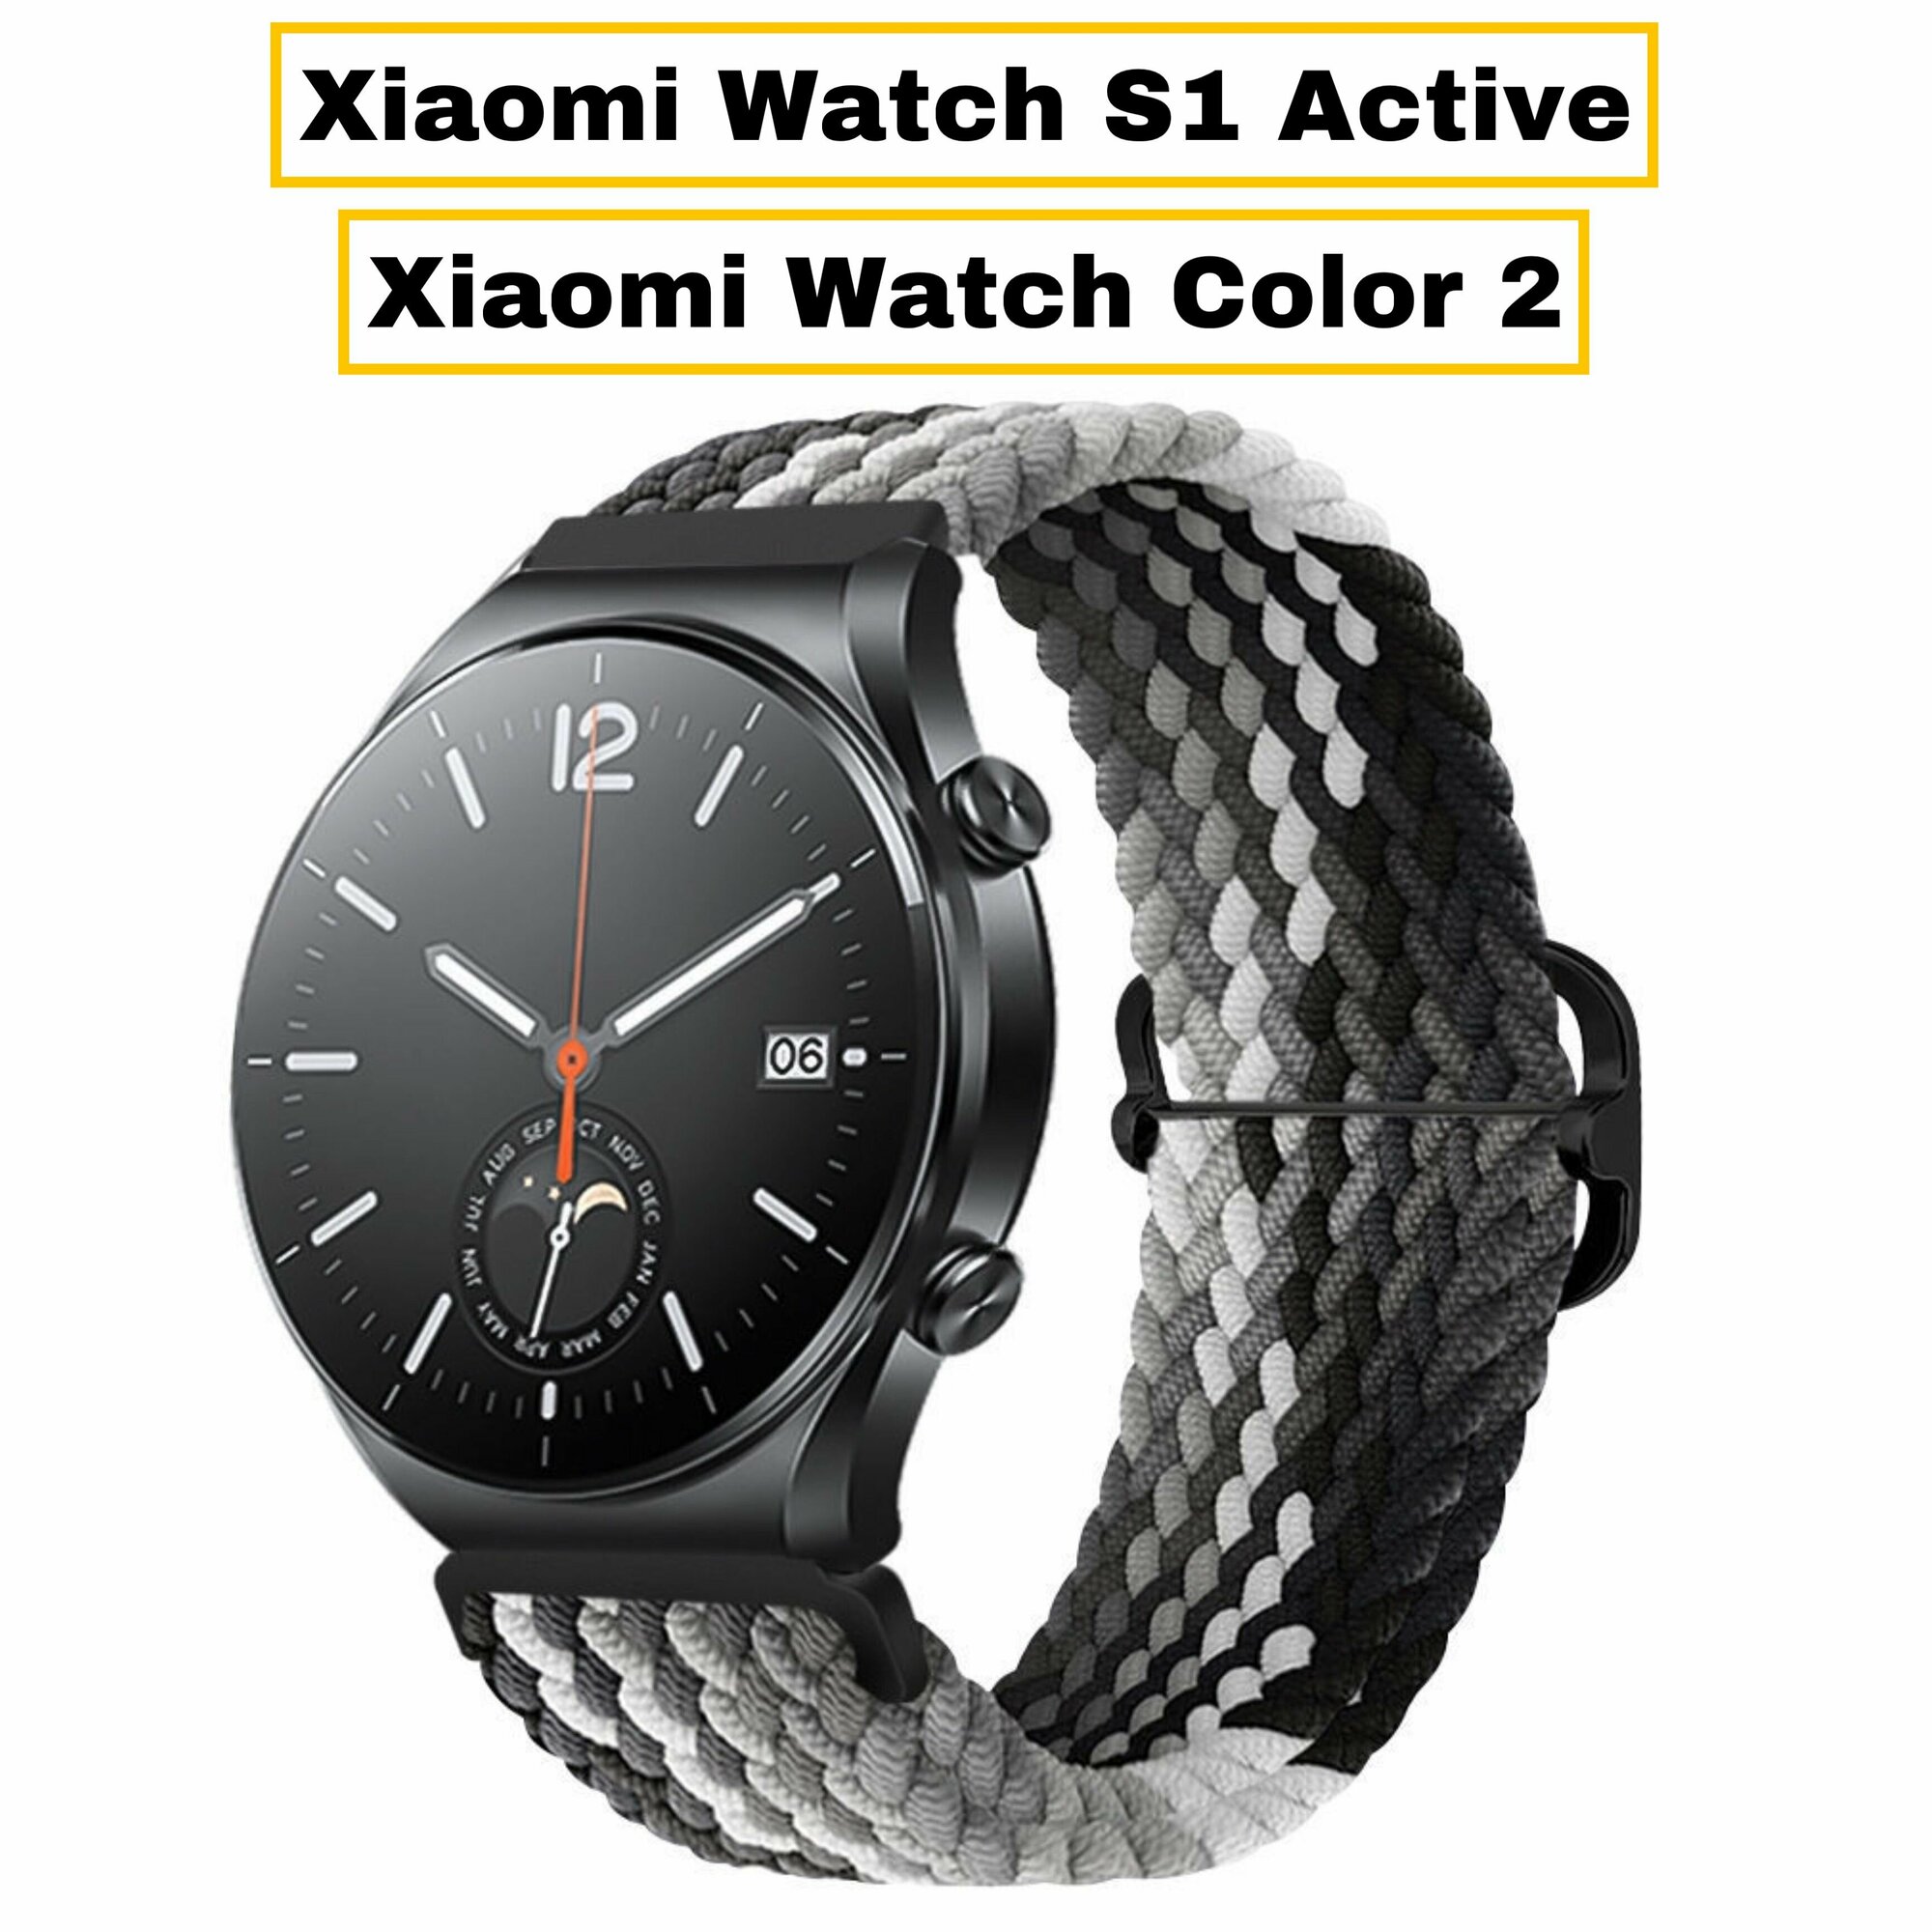 Сменный тканевый ремешок-браслет Garmoni Text для умных смарт-часов Xiaomi Watch S1/ S1 Active/ Color 2 из прочного плетения и плотного качественного нейлона спортивный дизайн черно-серый